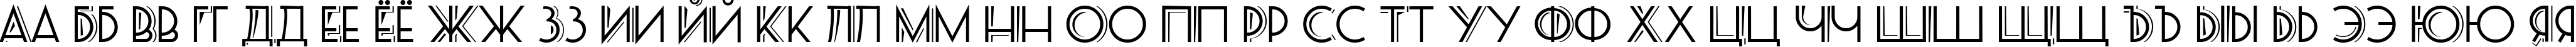 Пример написания русского алфавита шрифтом PosteRetro